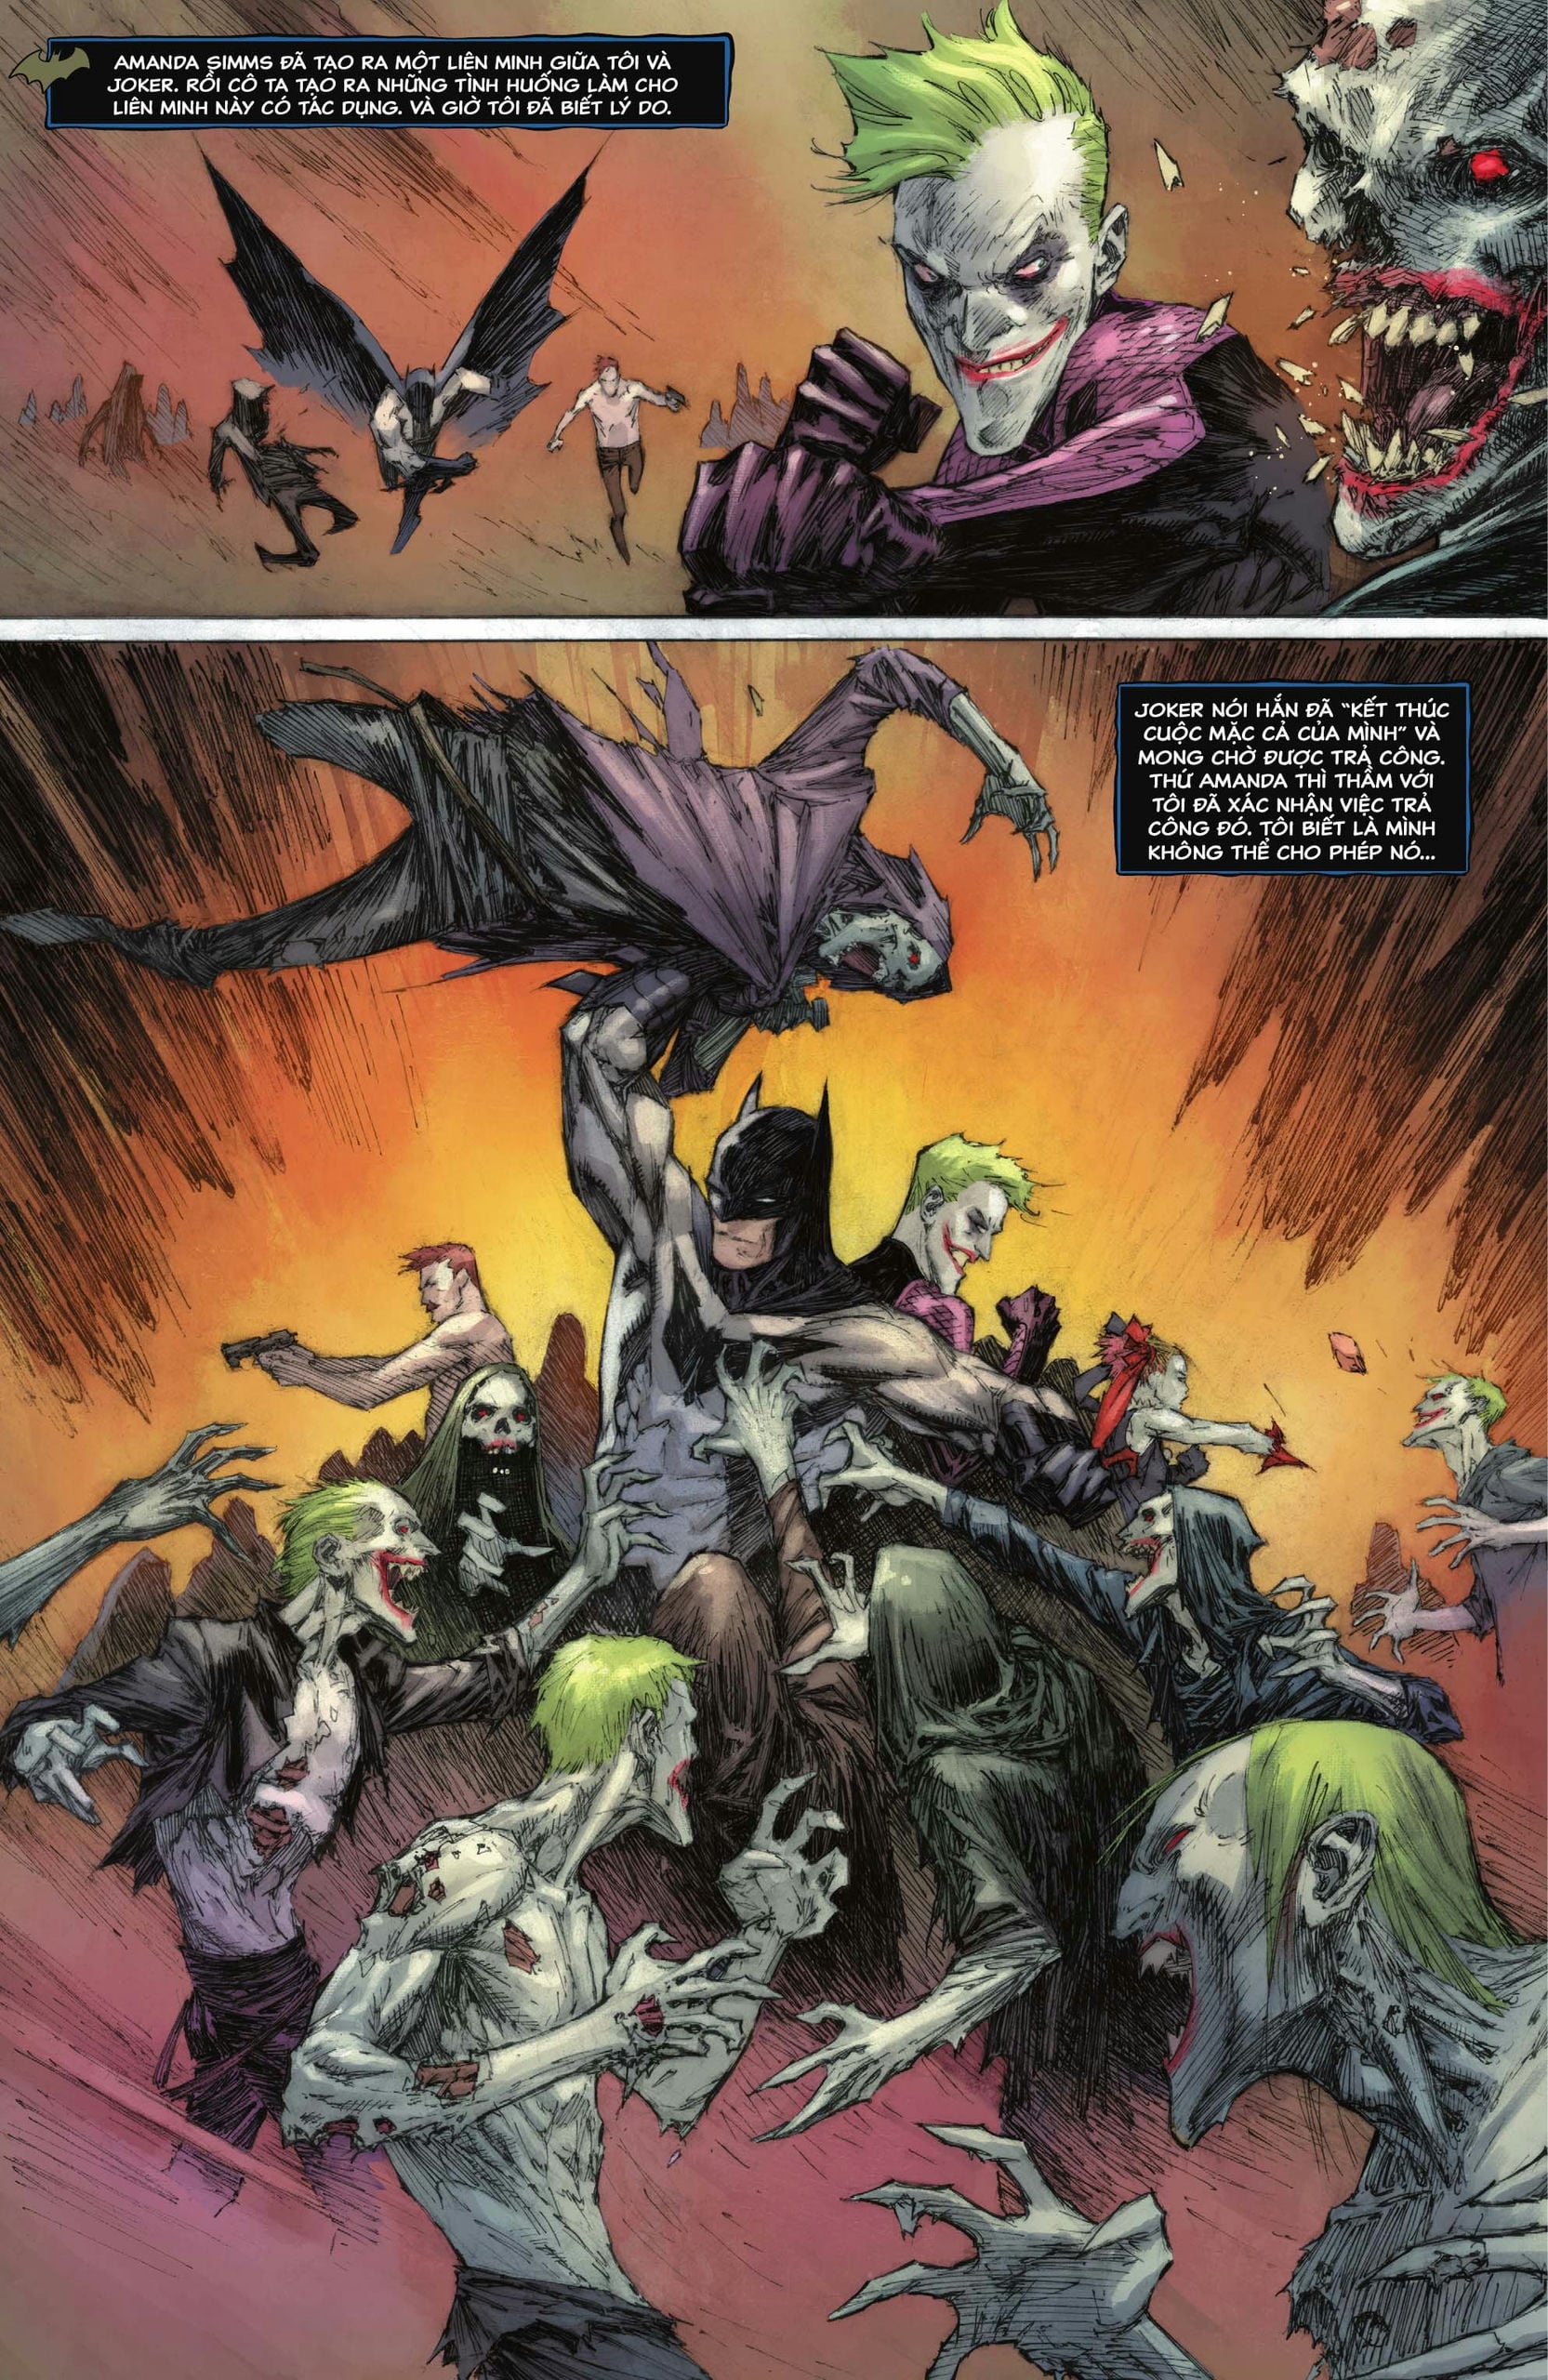 https://langgeek.net/wp-content/webpc-passthru.php?src=https://langgeek.net/wp-content/uploads/2023/05/Batman-_-The-Joker-The-Deadly-Duo-2022-006-017.jpg&nocache=1